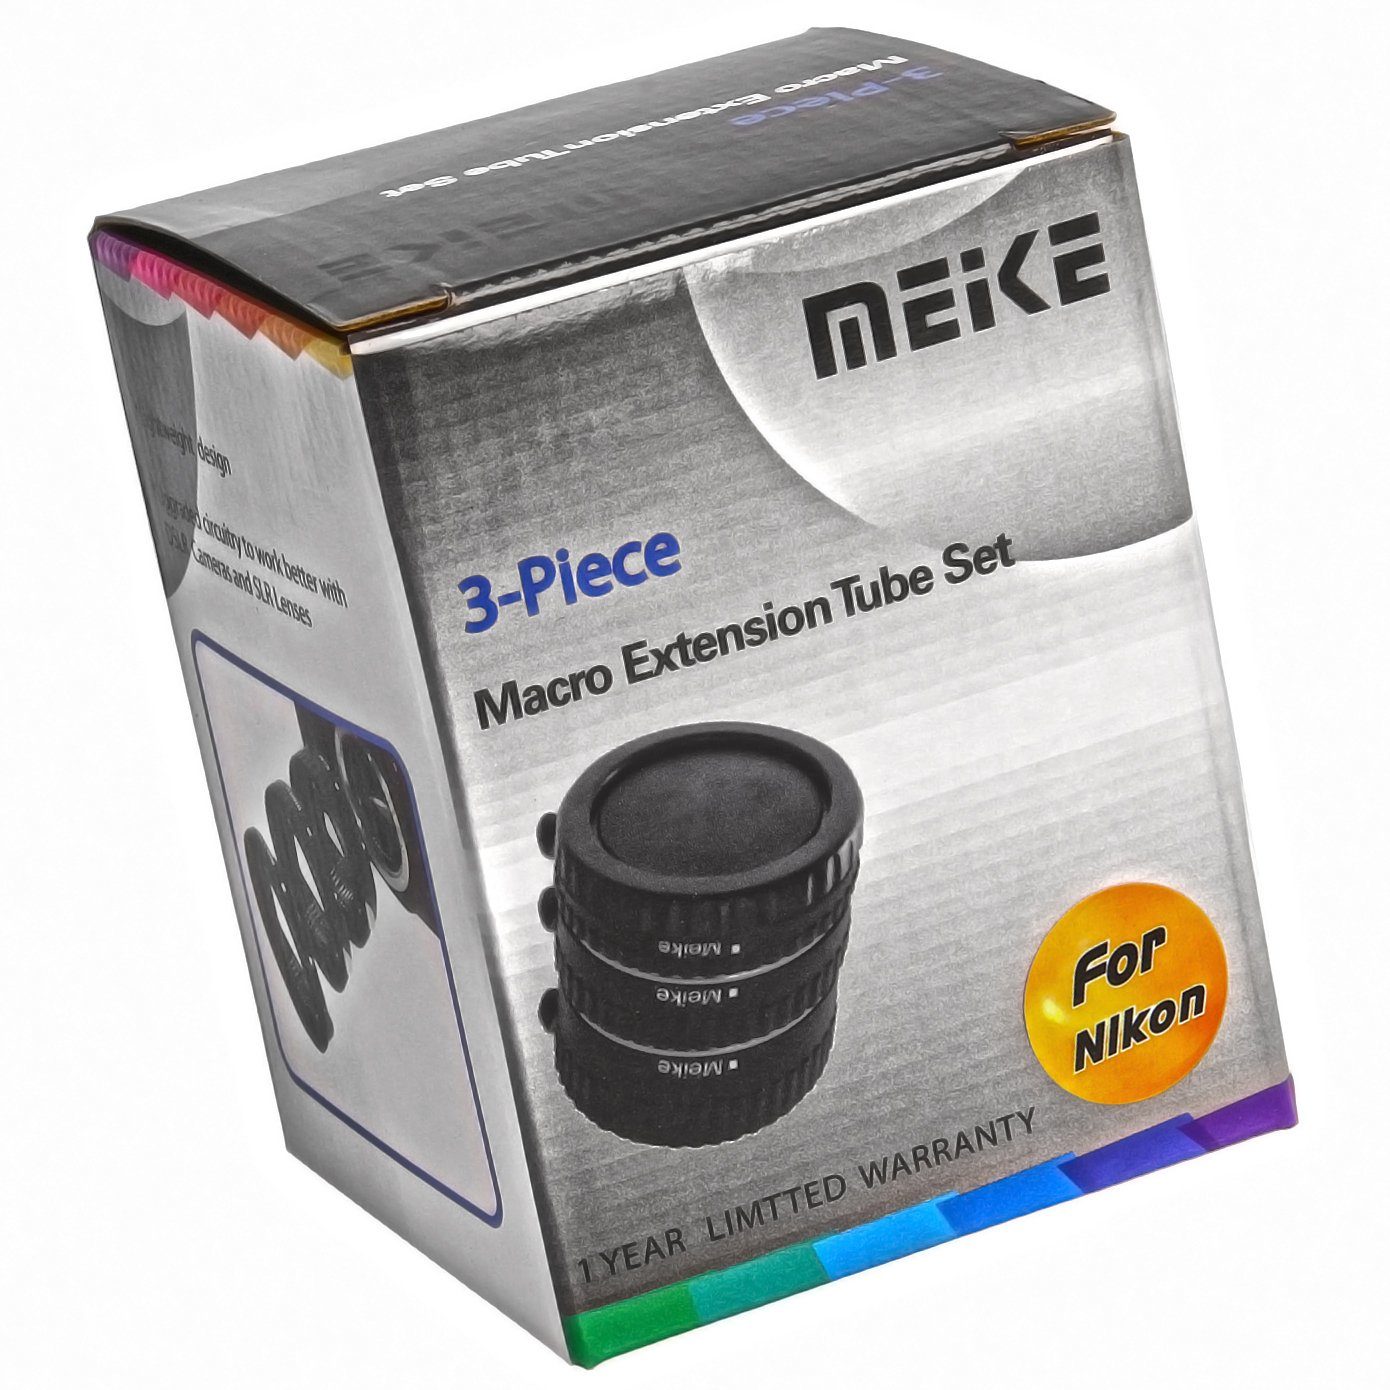 Meike Makroobjektiv mm 12/20/36 Zwischenringe Nikon Makrofotographie MK-N-AF-B Automatik -